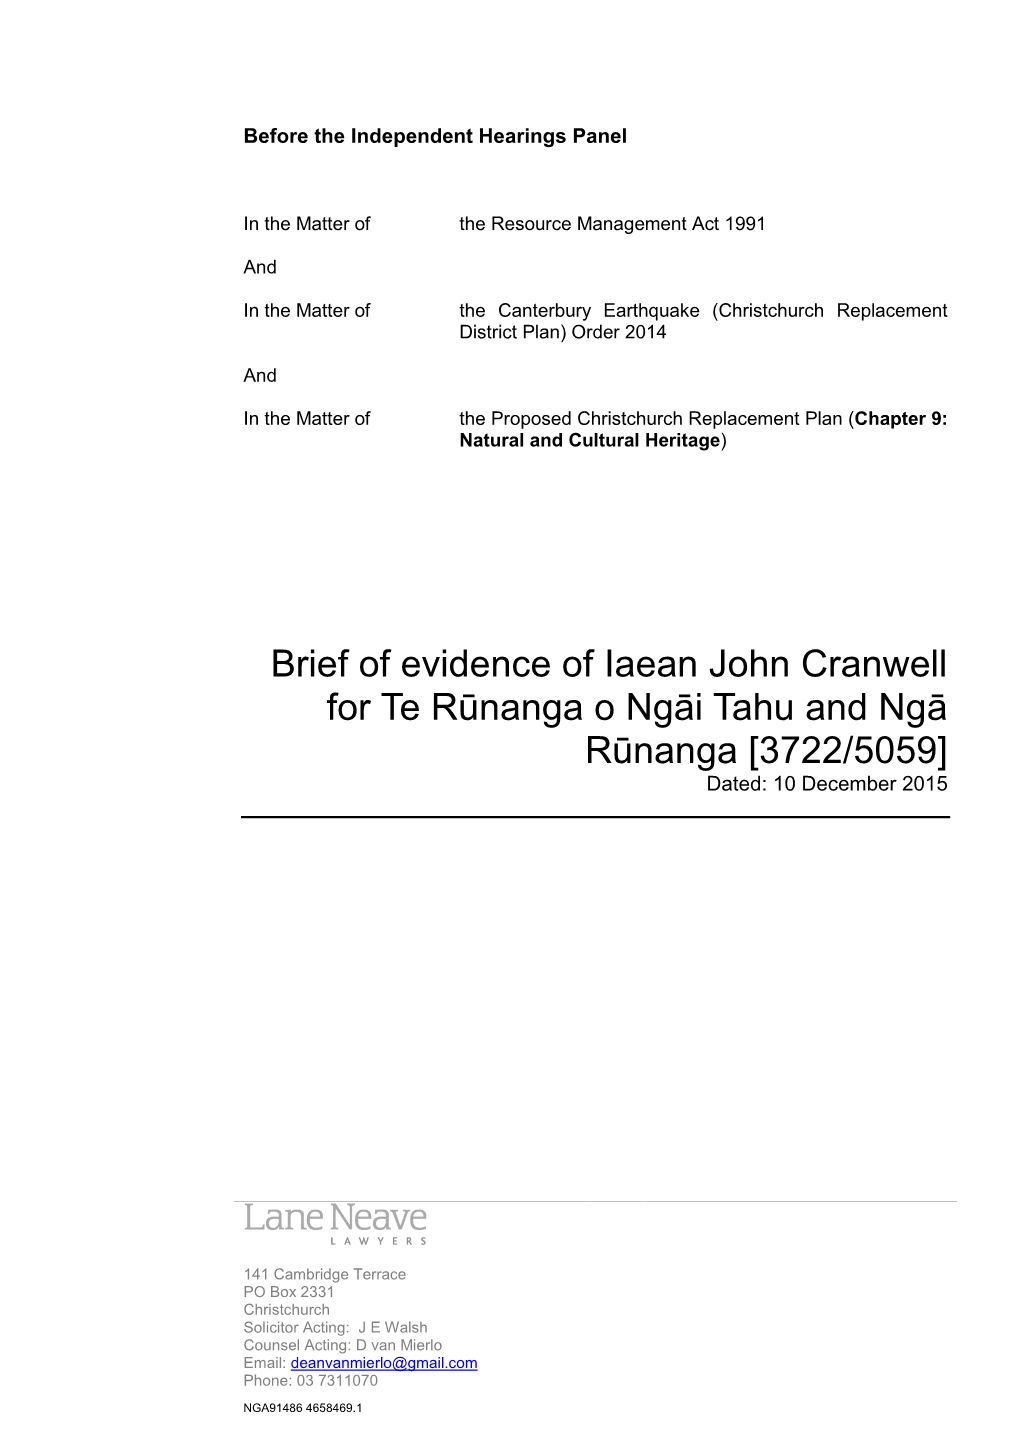 Brief of Evidence of Iaean John Cranwell for Te Rūnanga O Ngāi Tahu and Ngā Rūnanga [3722/5059] Dated: 10 December 2015